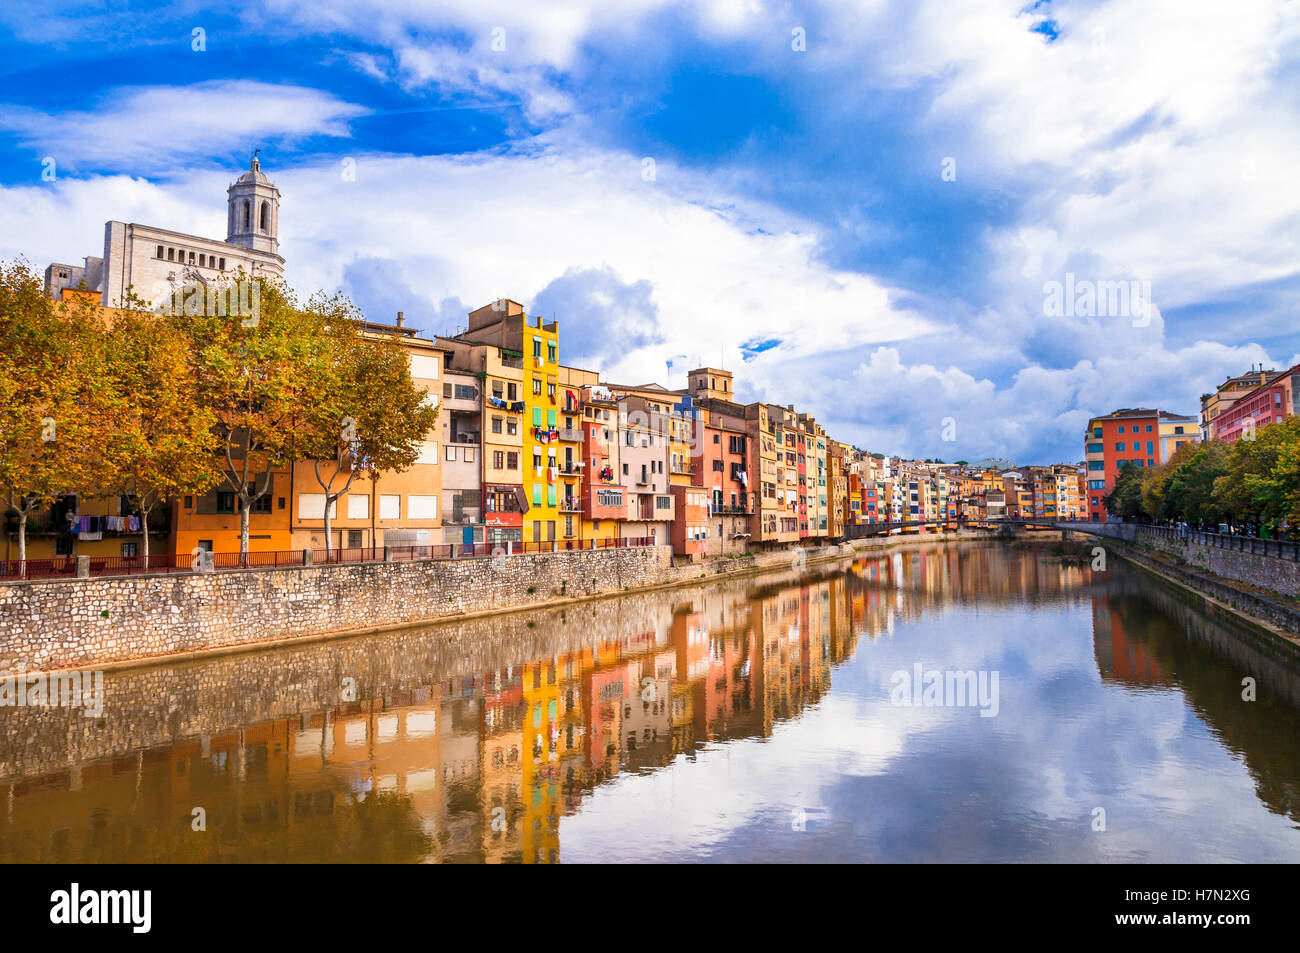 Girona - belle ville colorée en Catalogne, Espagne Banque D'Images